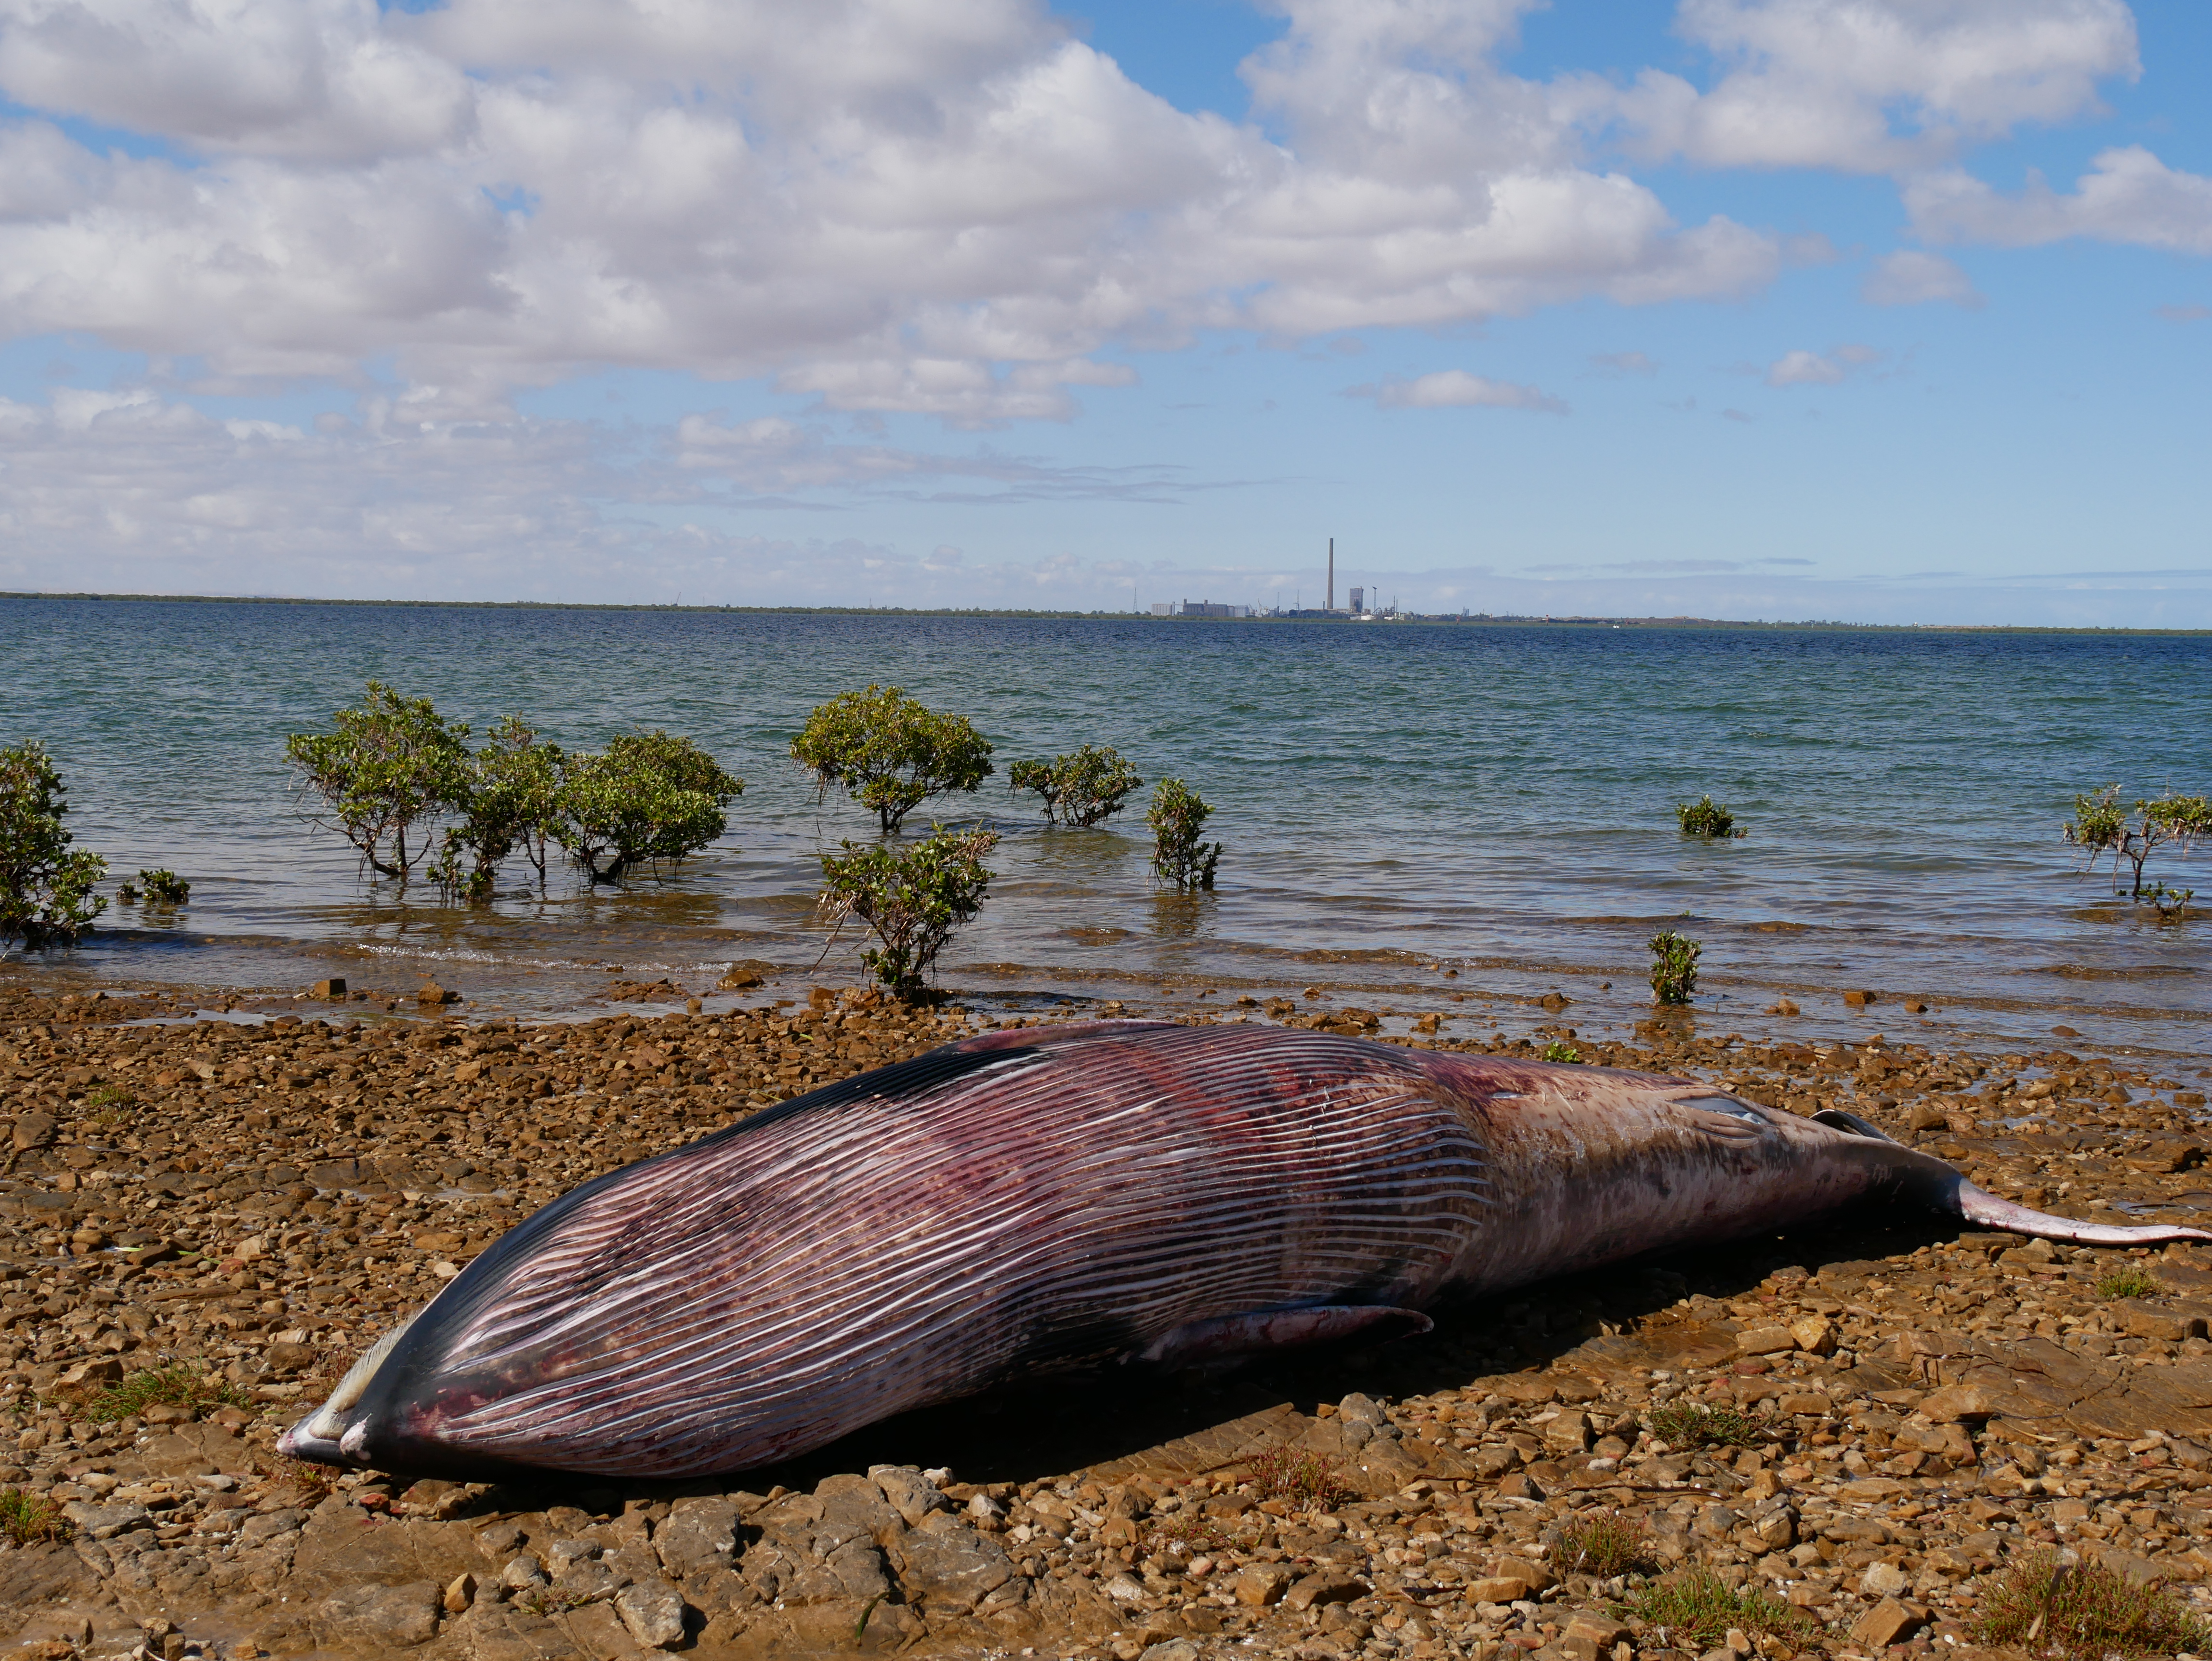 A dead whale on a stony beach.